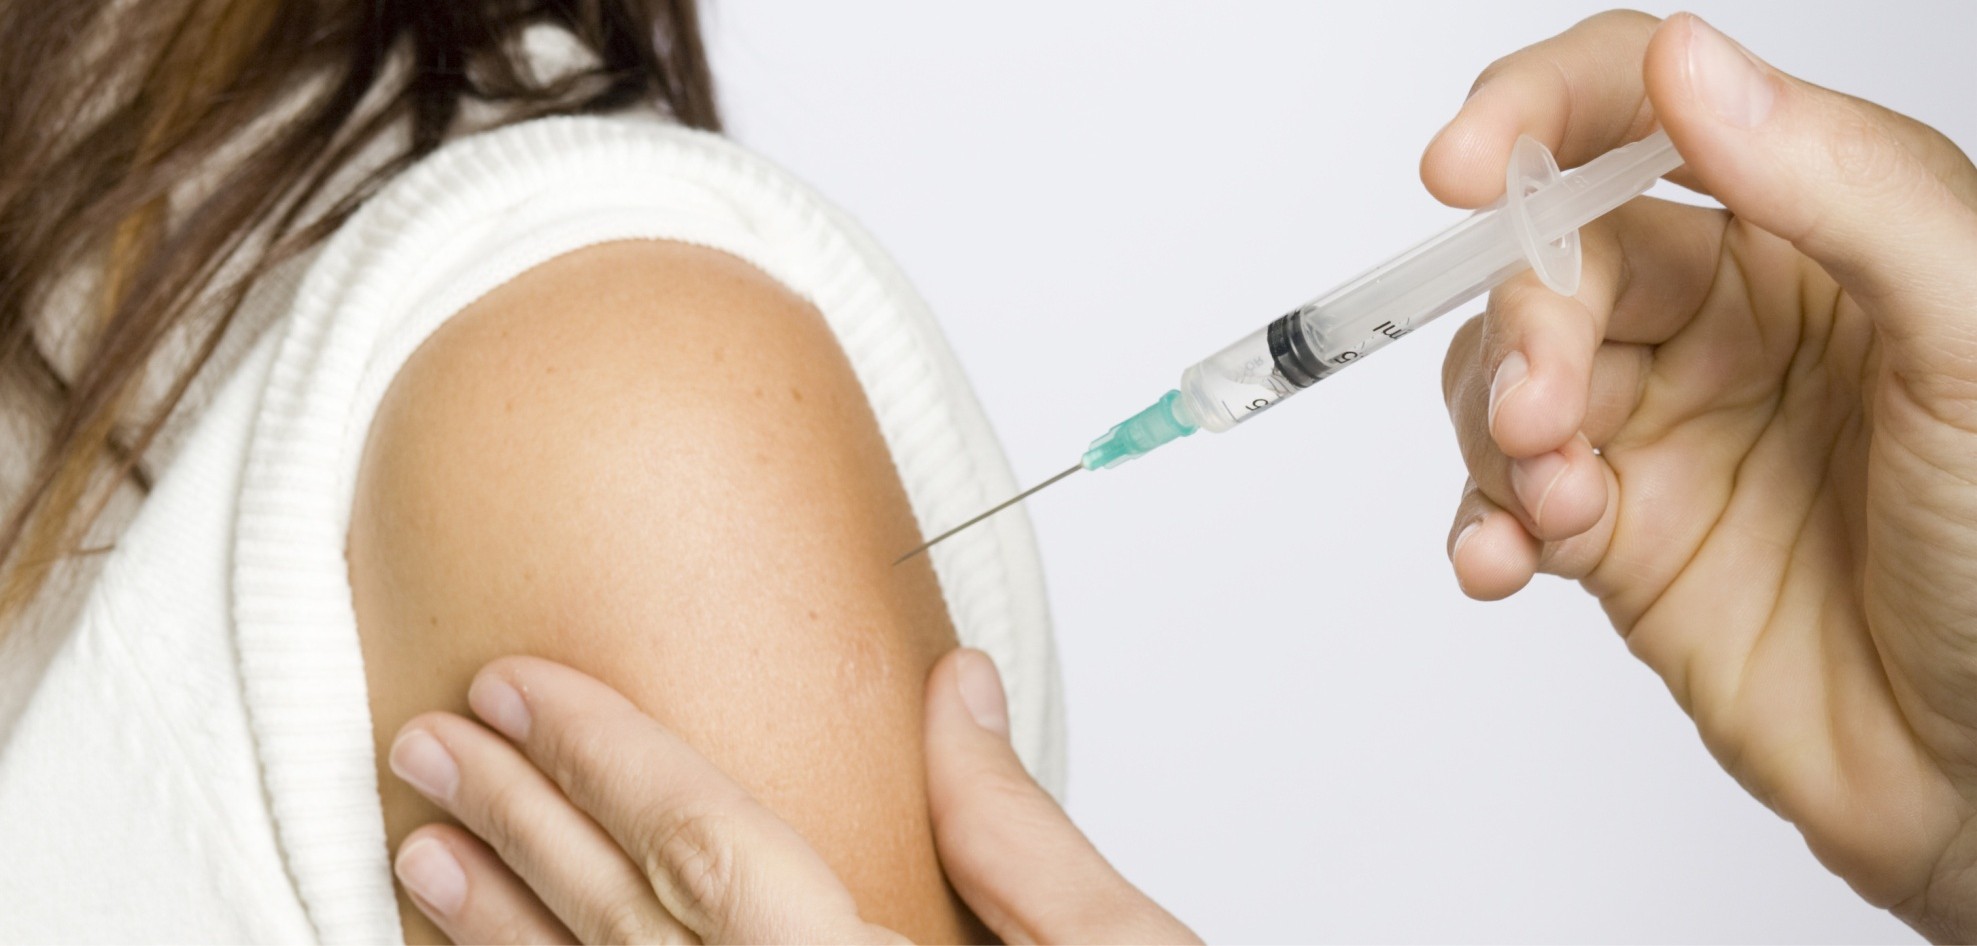 Puerto Montt: Admiten recurso y suspenden vacunación contra virus del papiloma humano en grupo de niñas